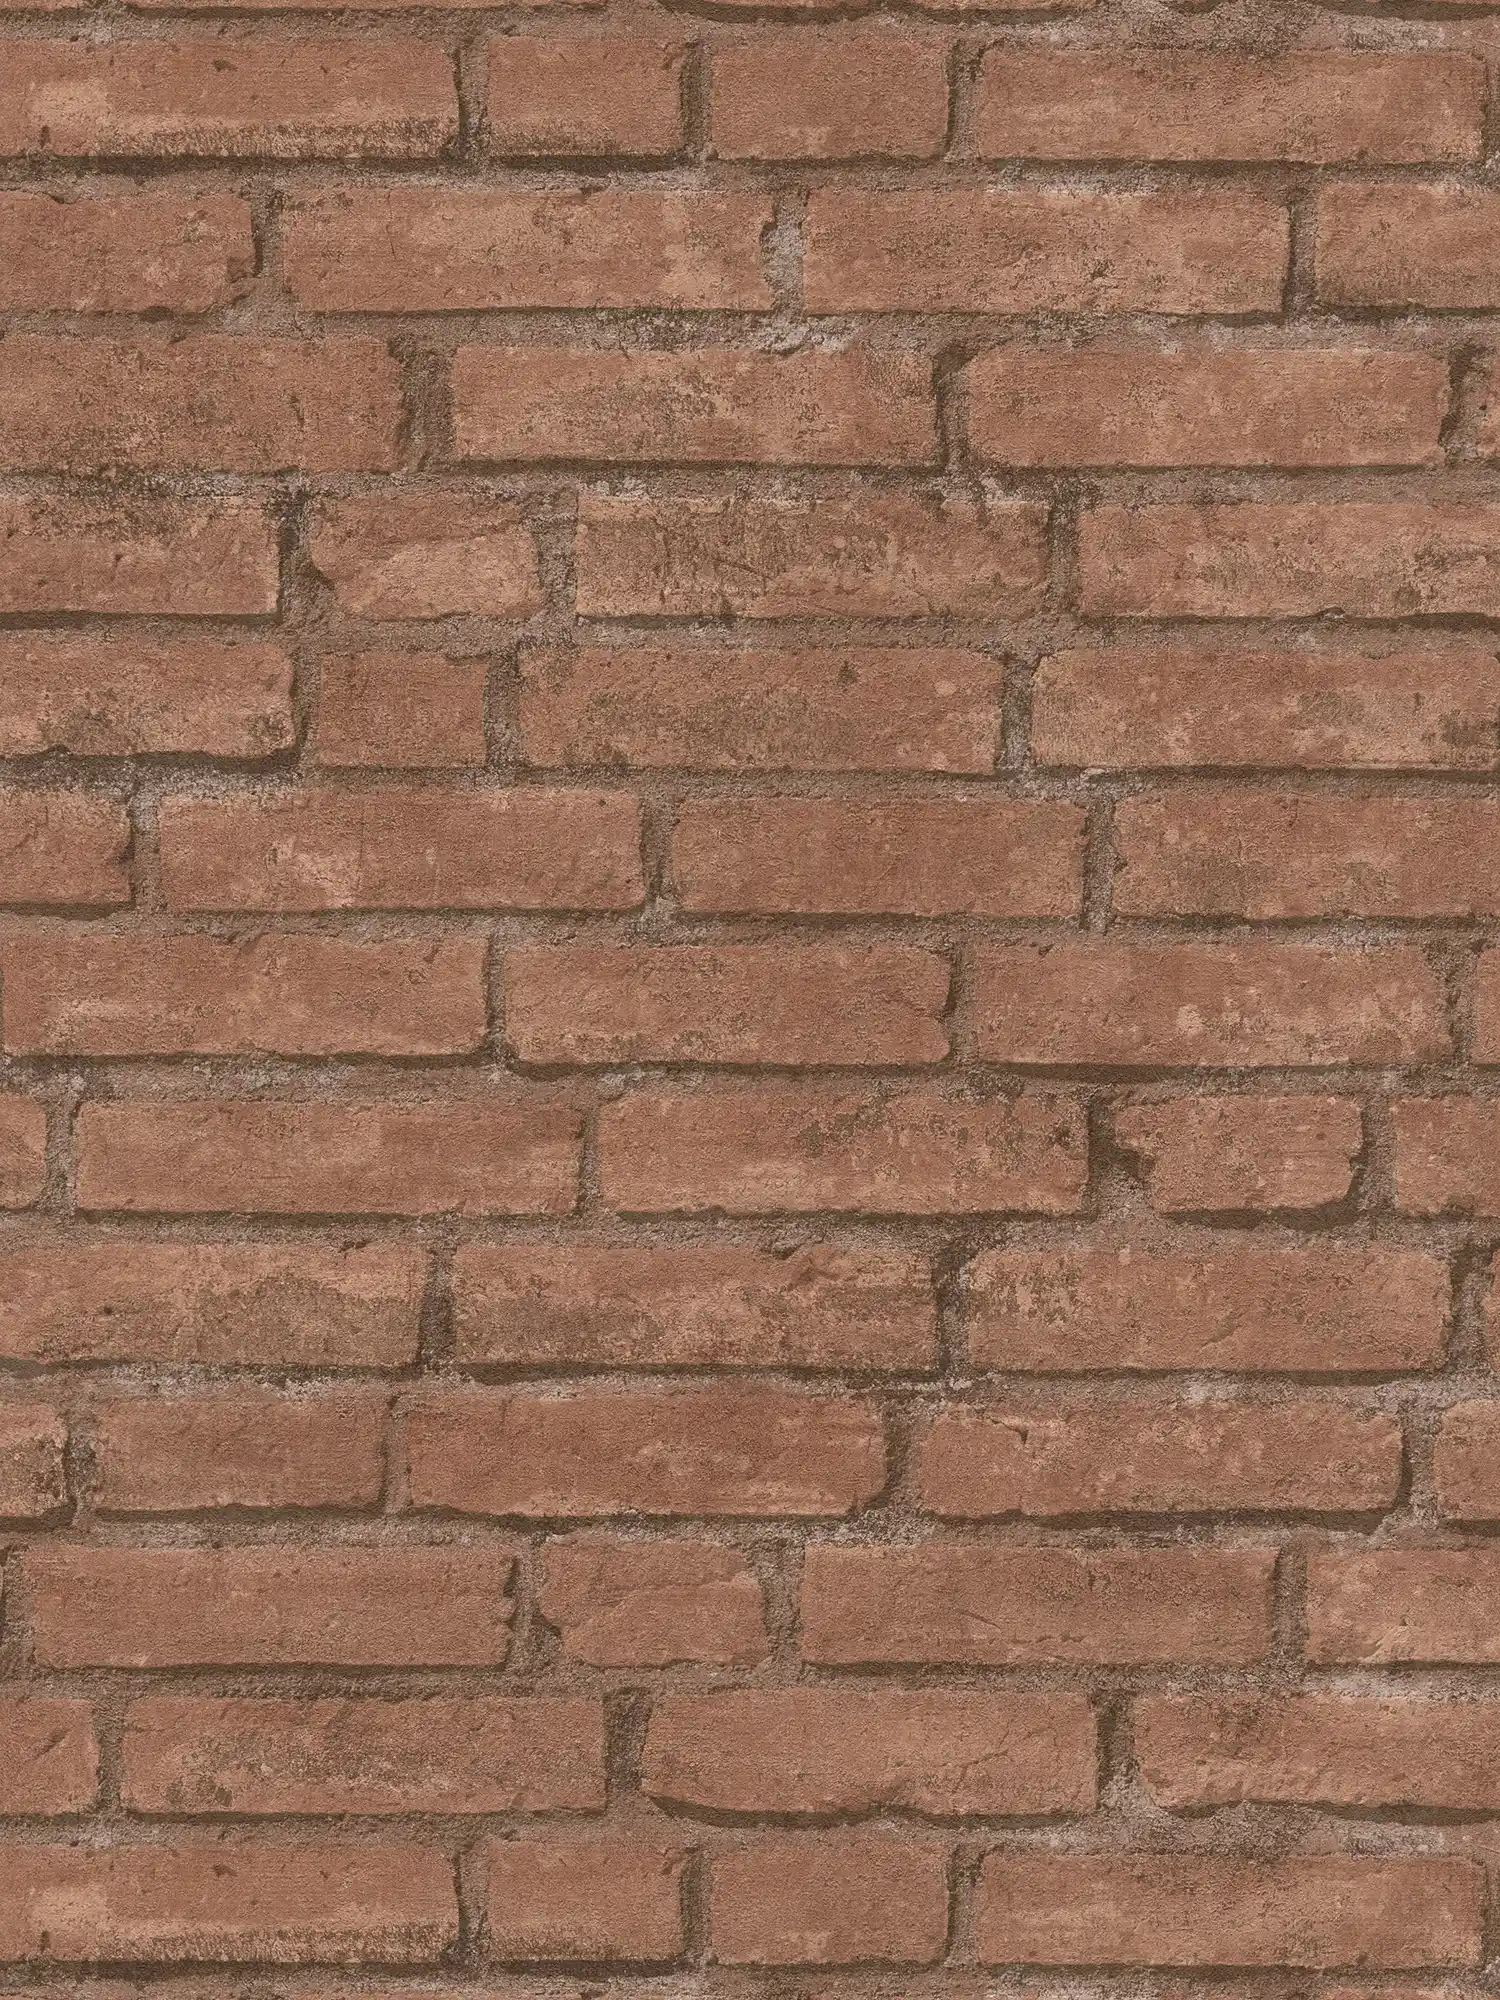 Stone wallpaper brick pattern, industrial & rustic - Brown, Orange
